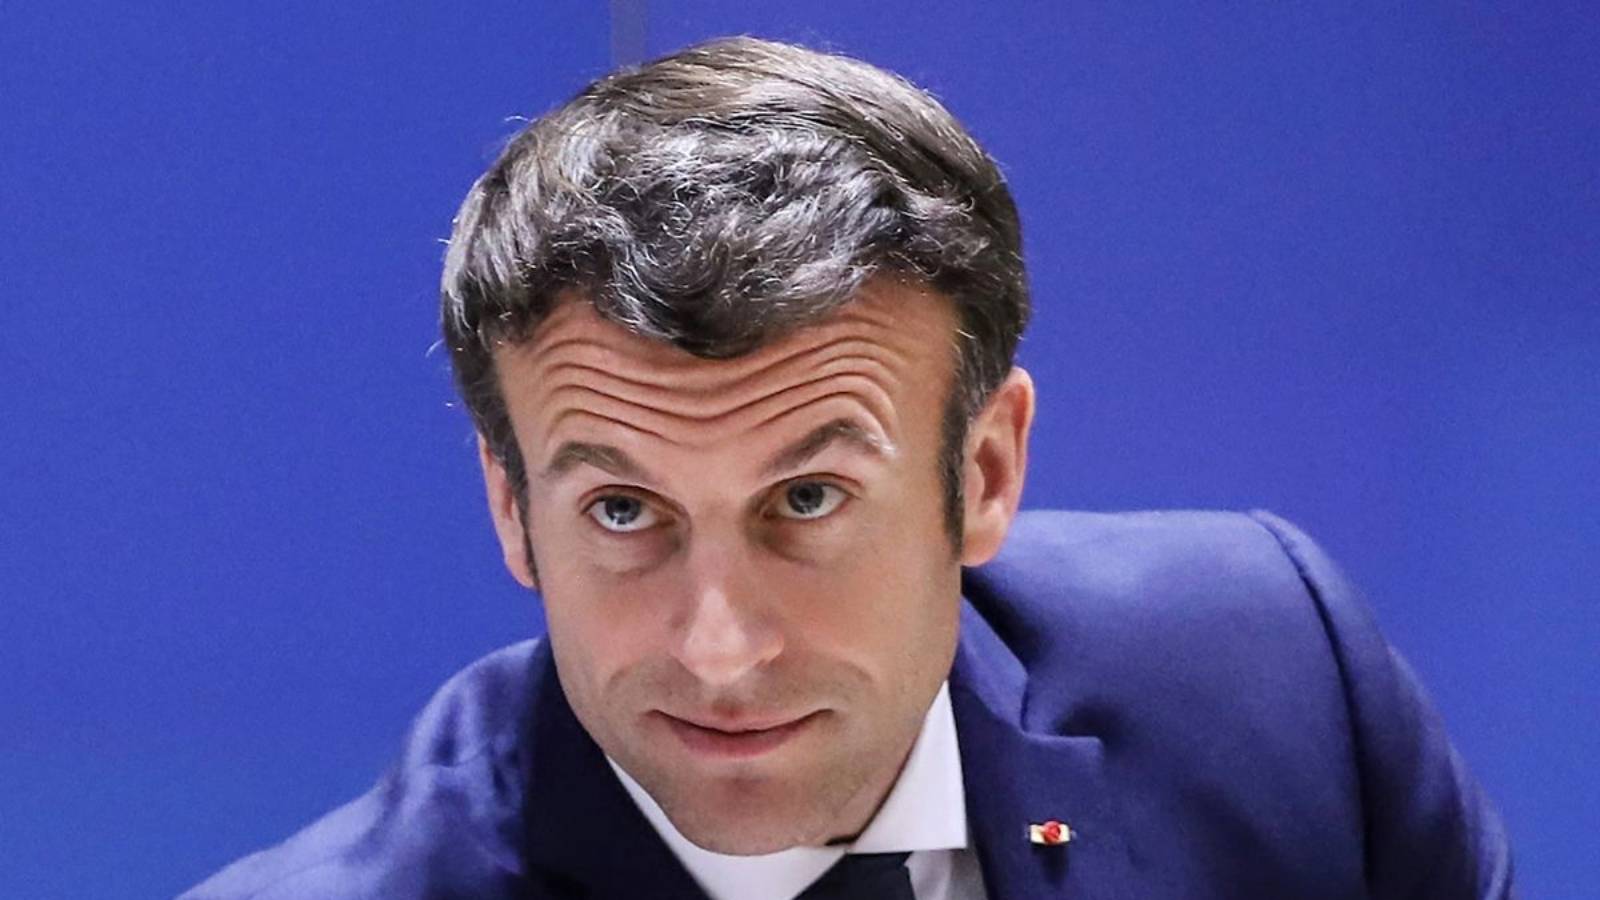 Emmanuel Macron Nu Exclude Trimiterea Tancurilor Leclerc in Ucraina